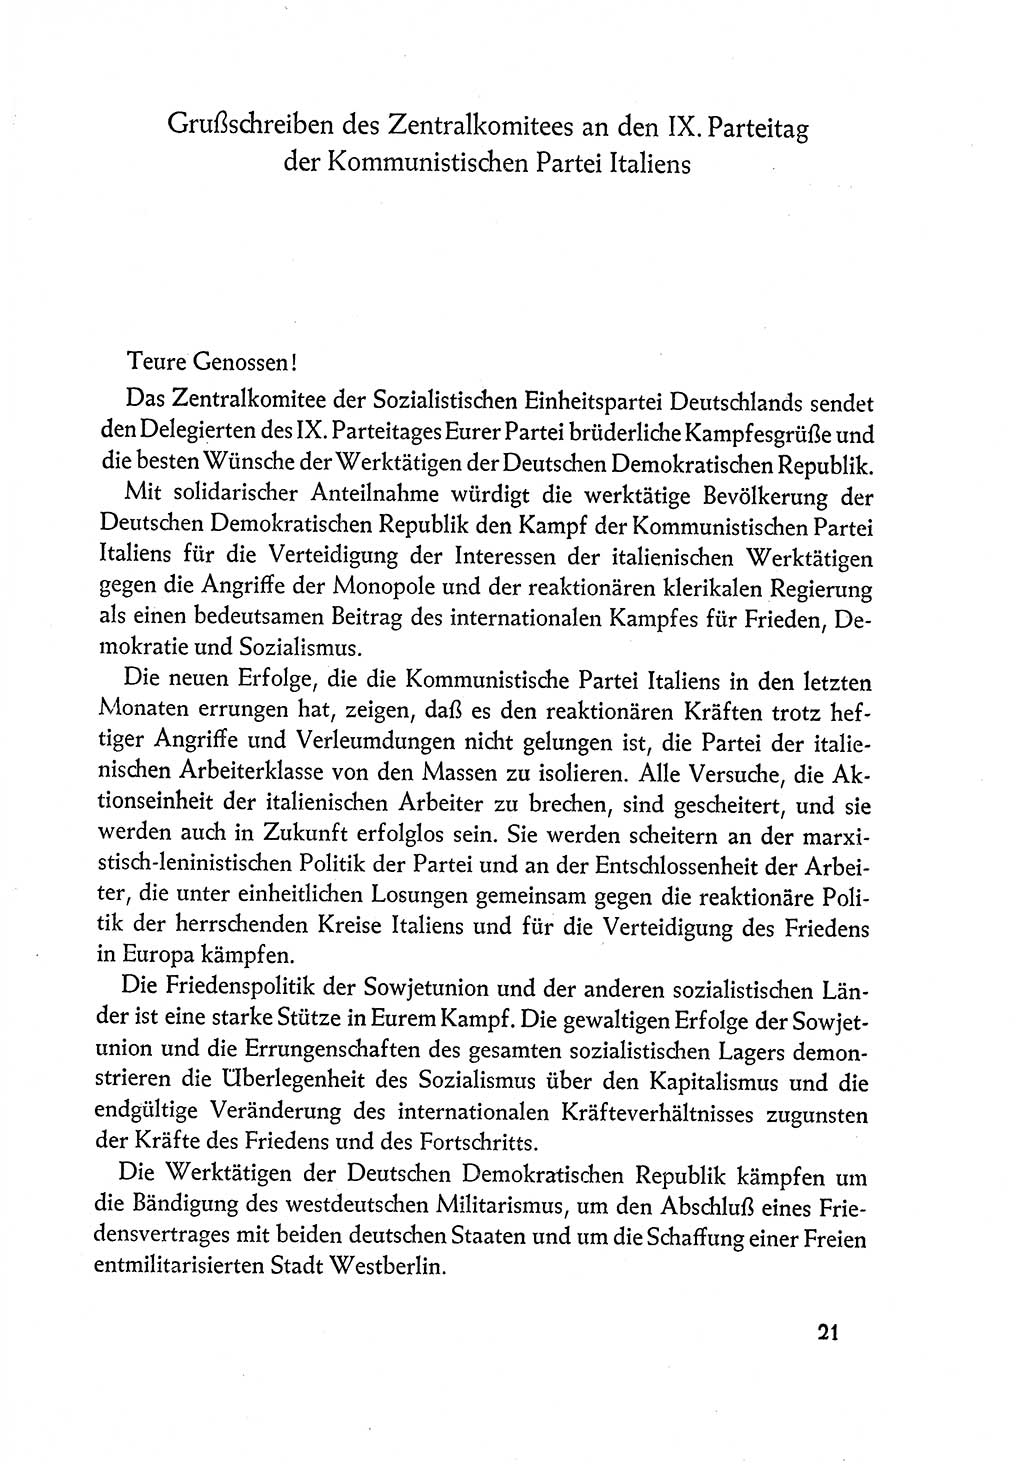 Dokumente der Sozialistischen Einheitspartei Deutschlands (SED) [Deutsche Demokratische Republik (DDR)] 1960-1961, Seite 21 (Dok. SED DDR 1960-1961, S. 21)